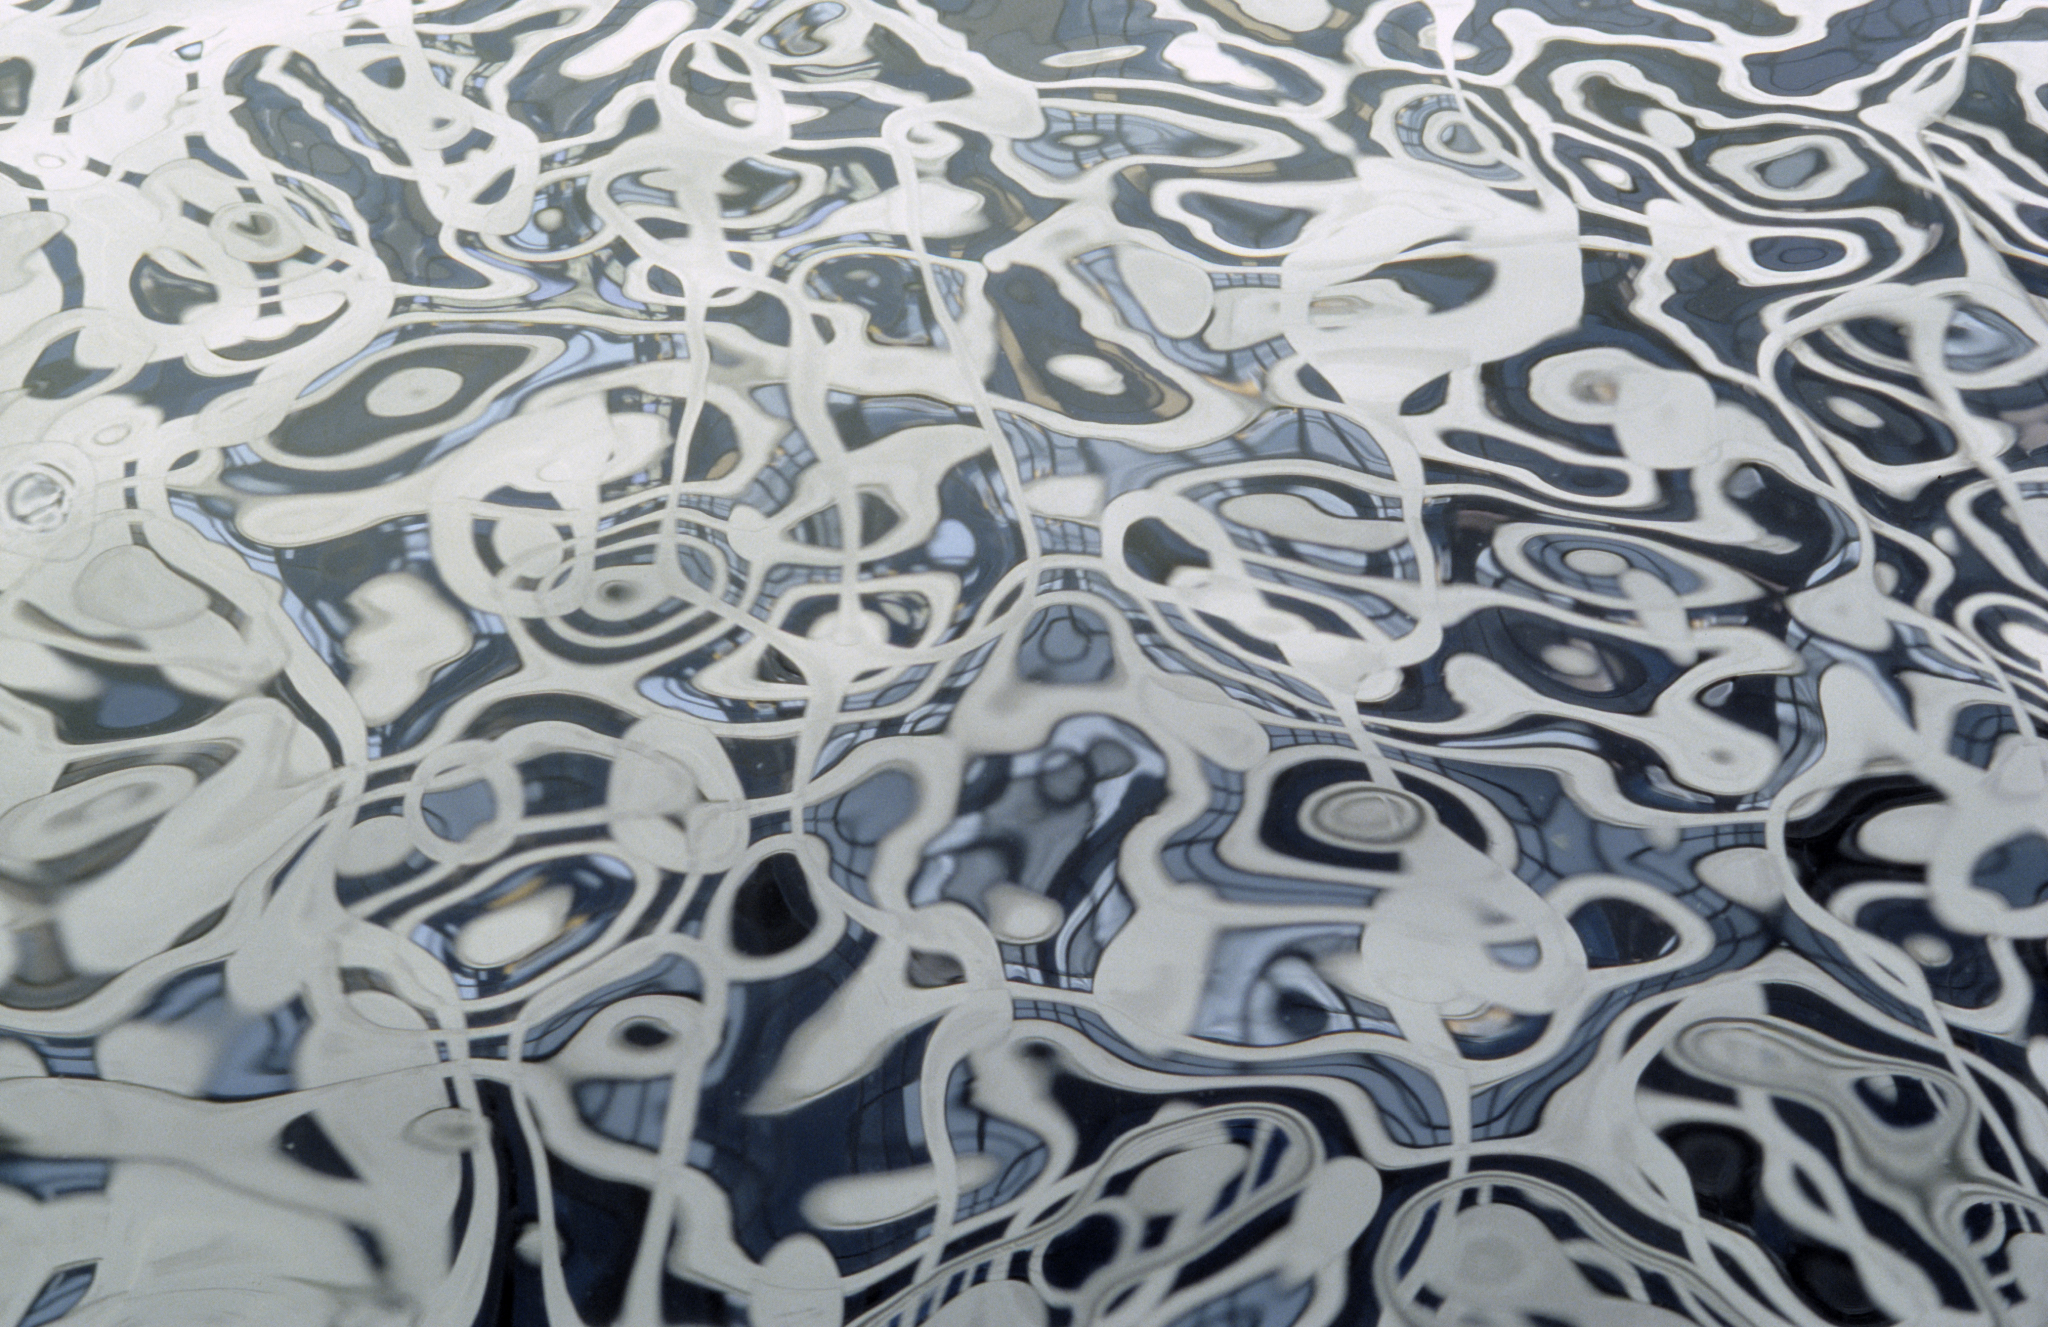 riverpainting, 2007, 29 x 44 cm